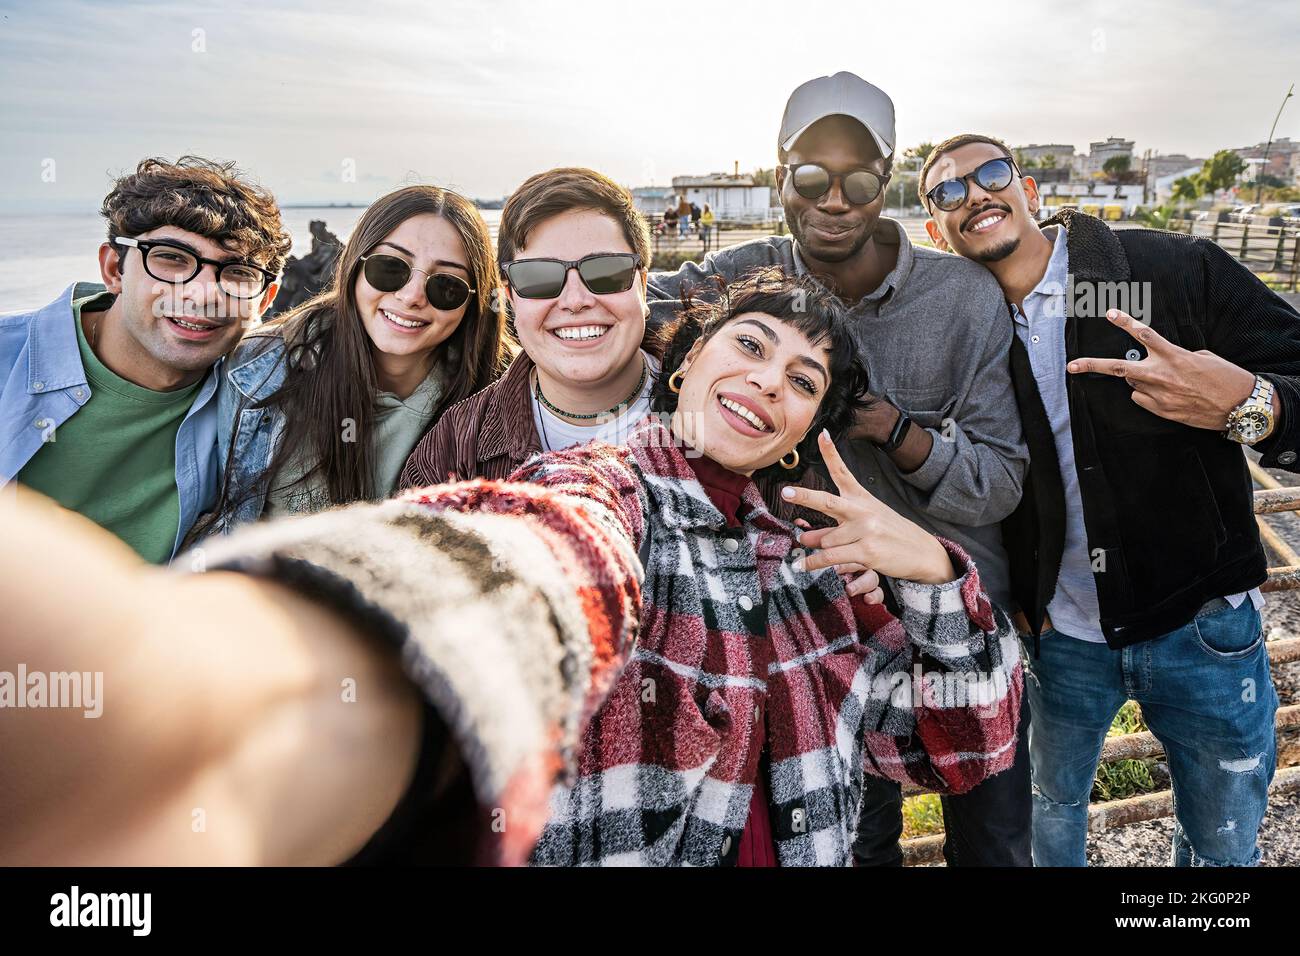 Multiethnische Gruppe von Freunden, die ein Selfie am Meer machen - multirassische junge Menschen, die zusammen für ein Gruppenbild am Meer stehen - peo Stockfoto